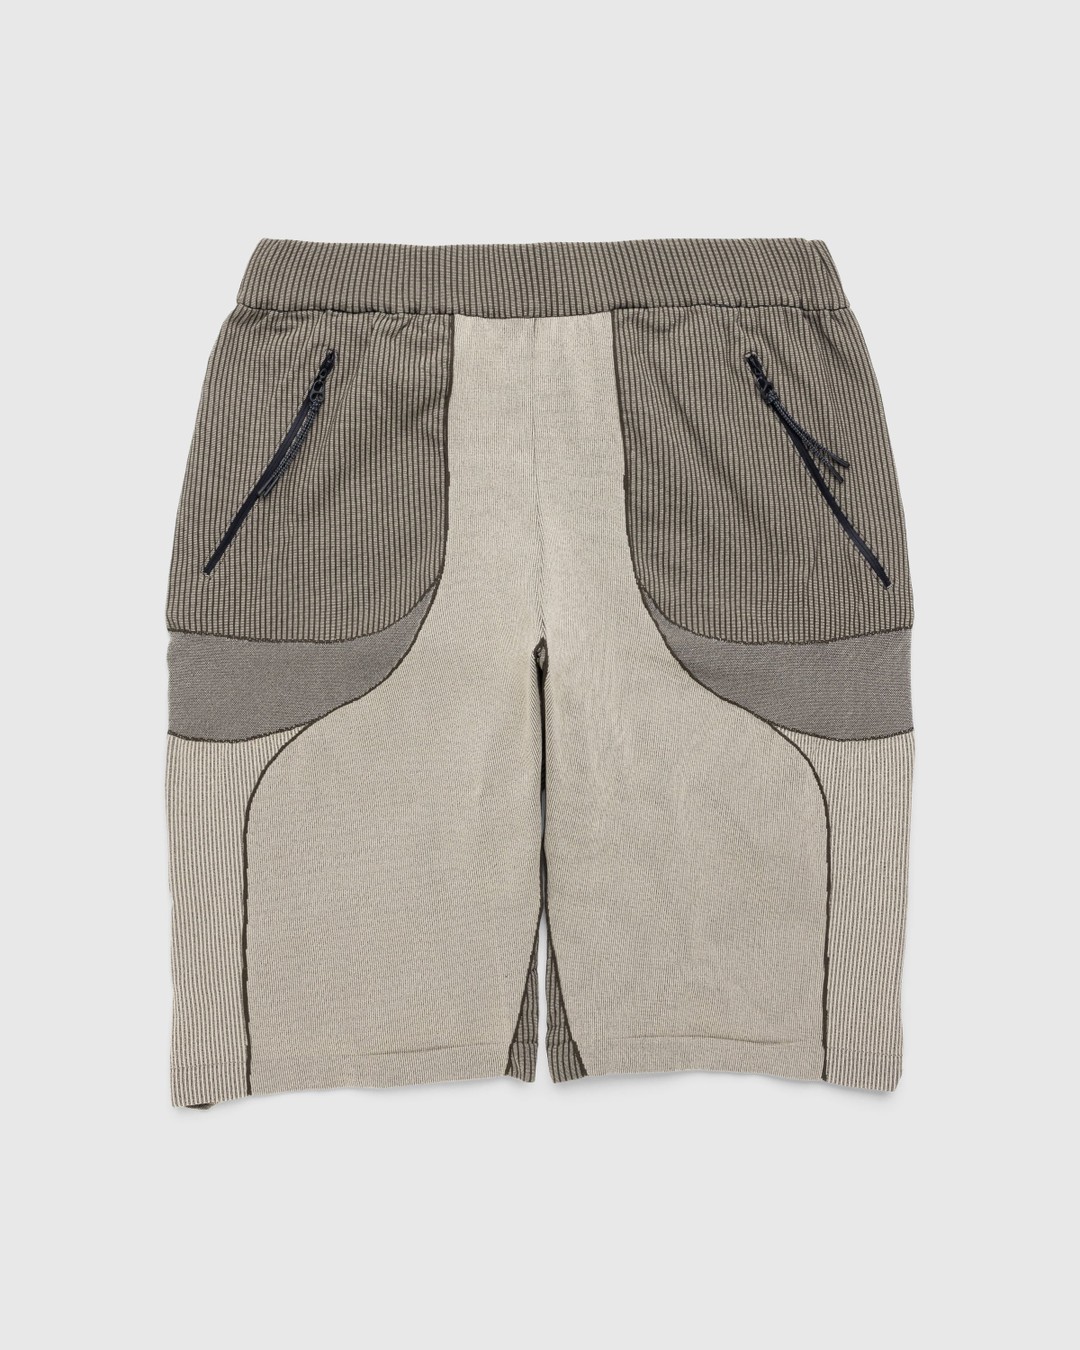 J.L-A.L – Gelder Knitted Short Brown/Sand - Shorts - Green - Image 1